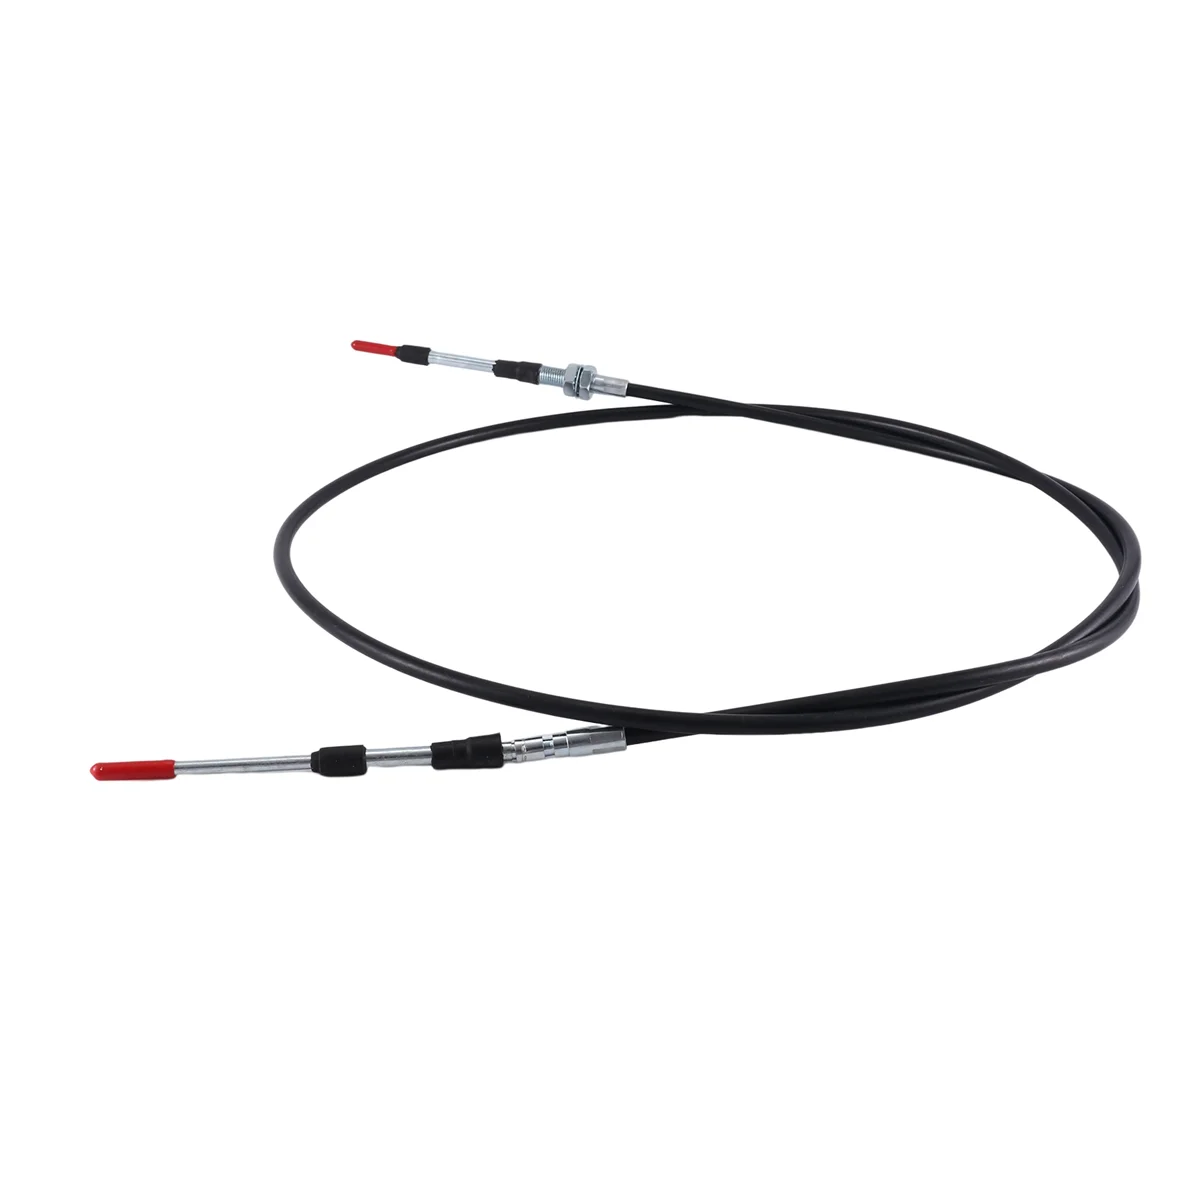 6675668 Cable del Acelerador para Bobcat S100,S220,S250,S300,S330,MT50,341 del Acelerador Cable del Acelerador . ' - ' . 1